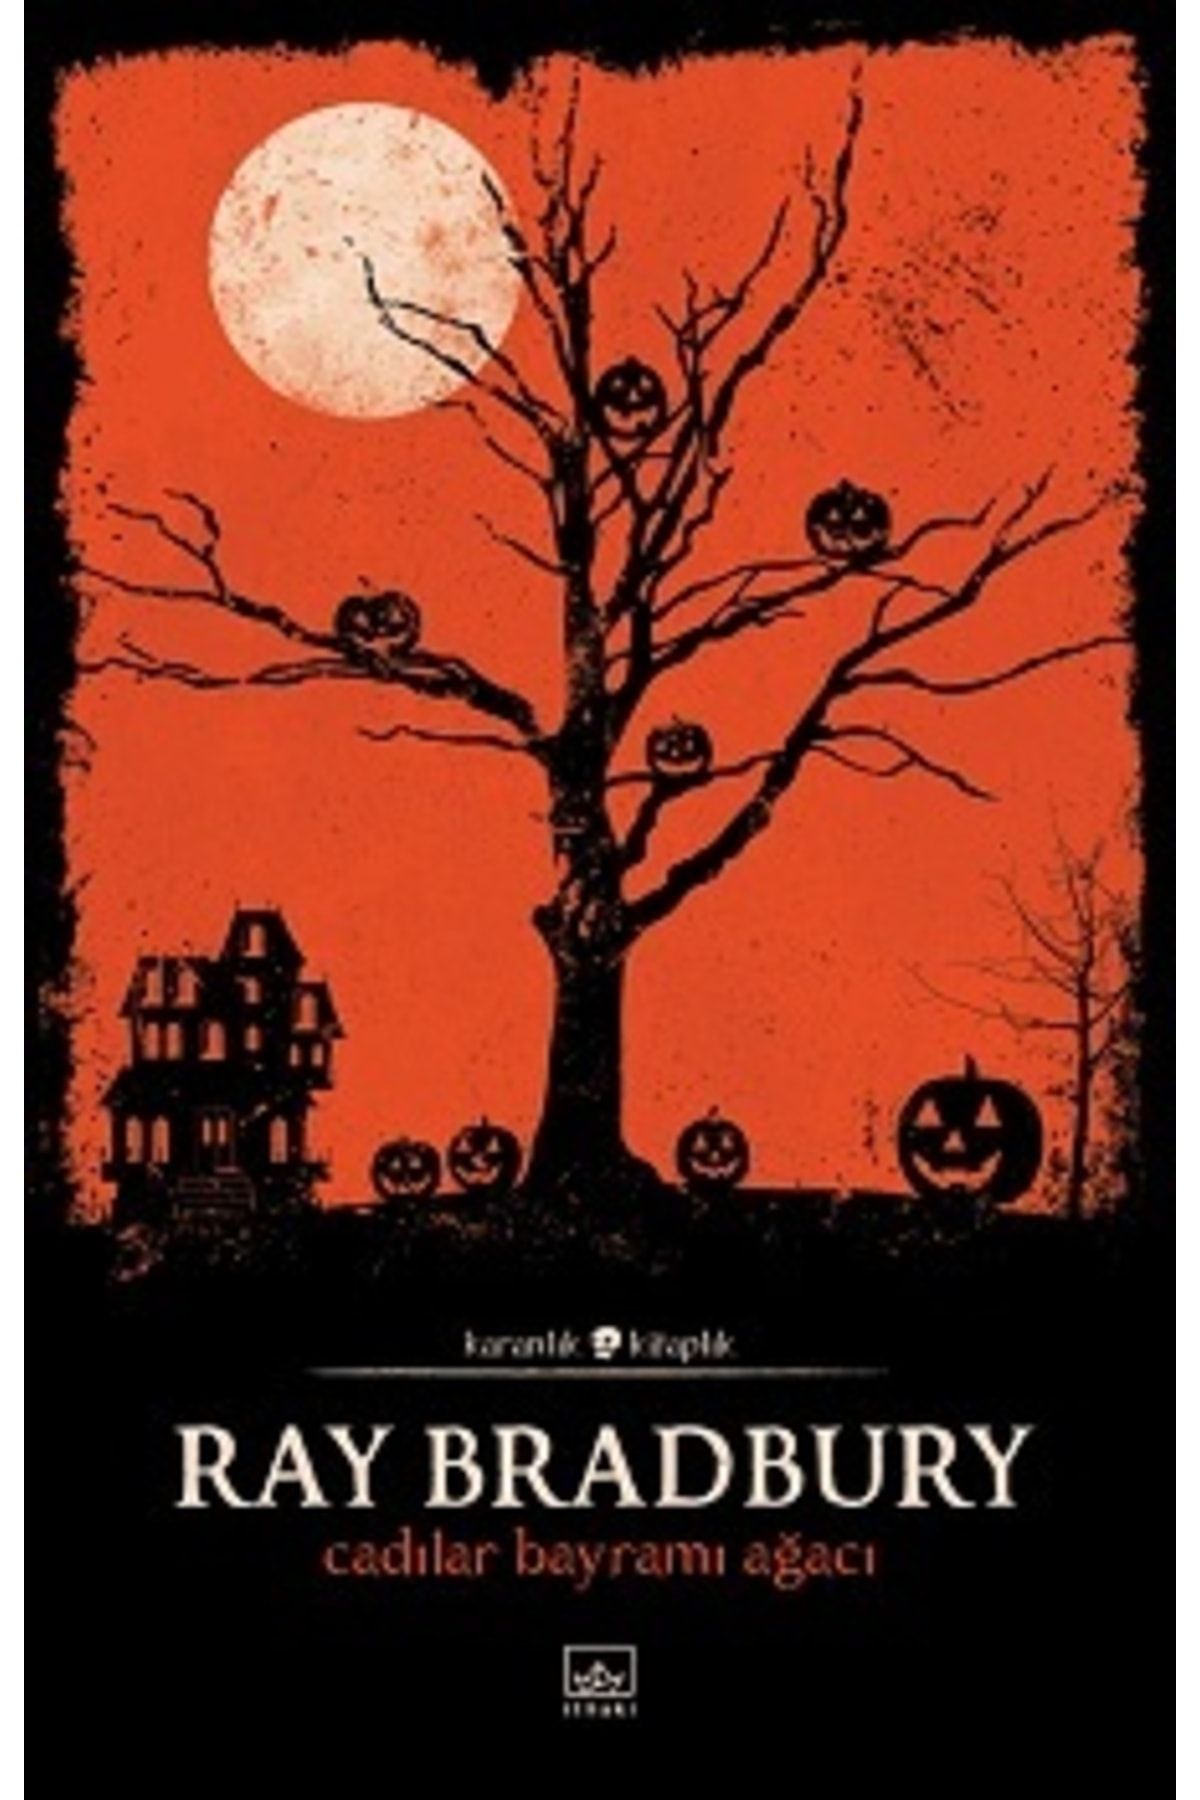 İthaki Yayınları Cadılar Bayramı Ağacı, Ray Bradbury, Inları, Cadılar Bayramı Ağacı Kitabı, 136 Sayfa